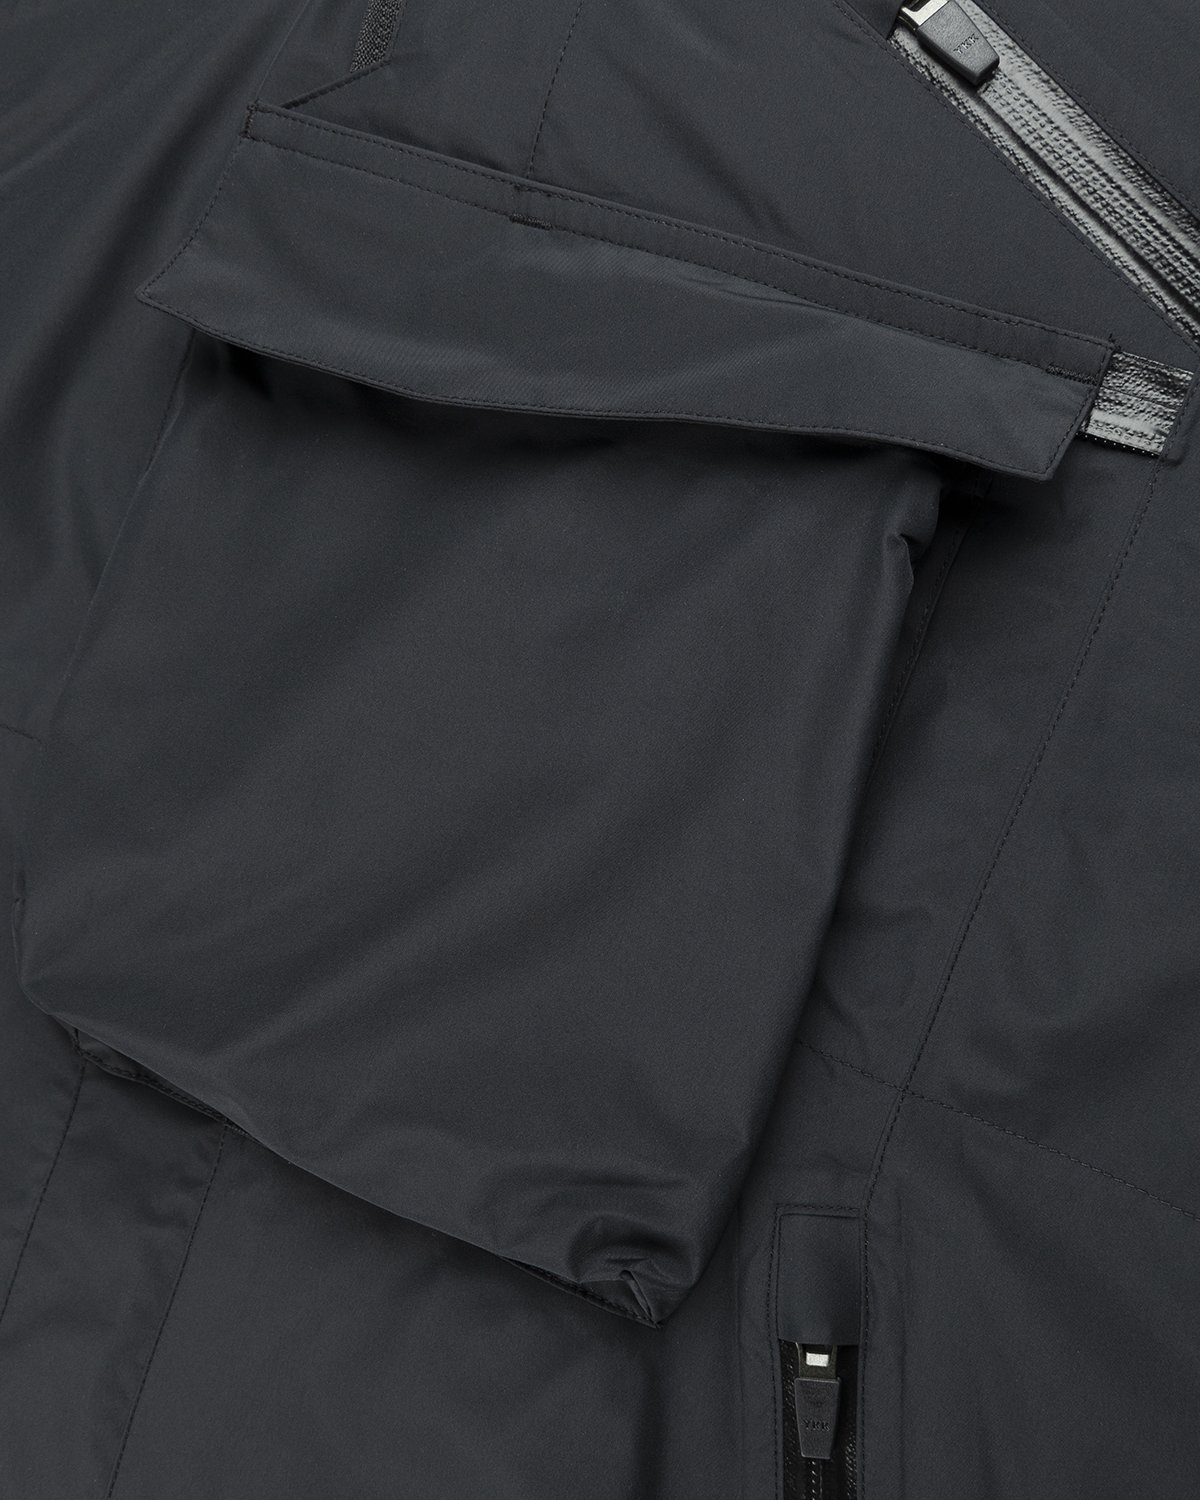 ACRONYM – J1W-GTPL Black - Outerwear - Black - Image 5